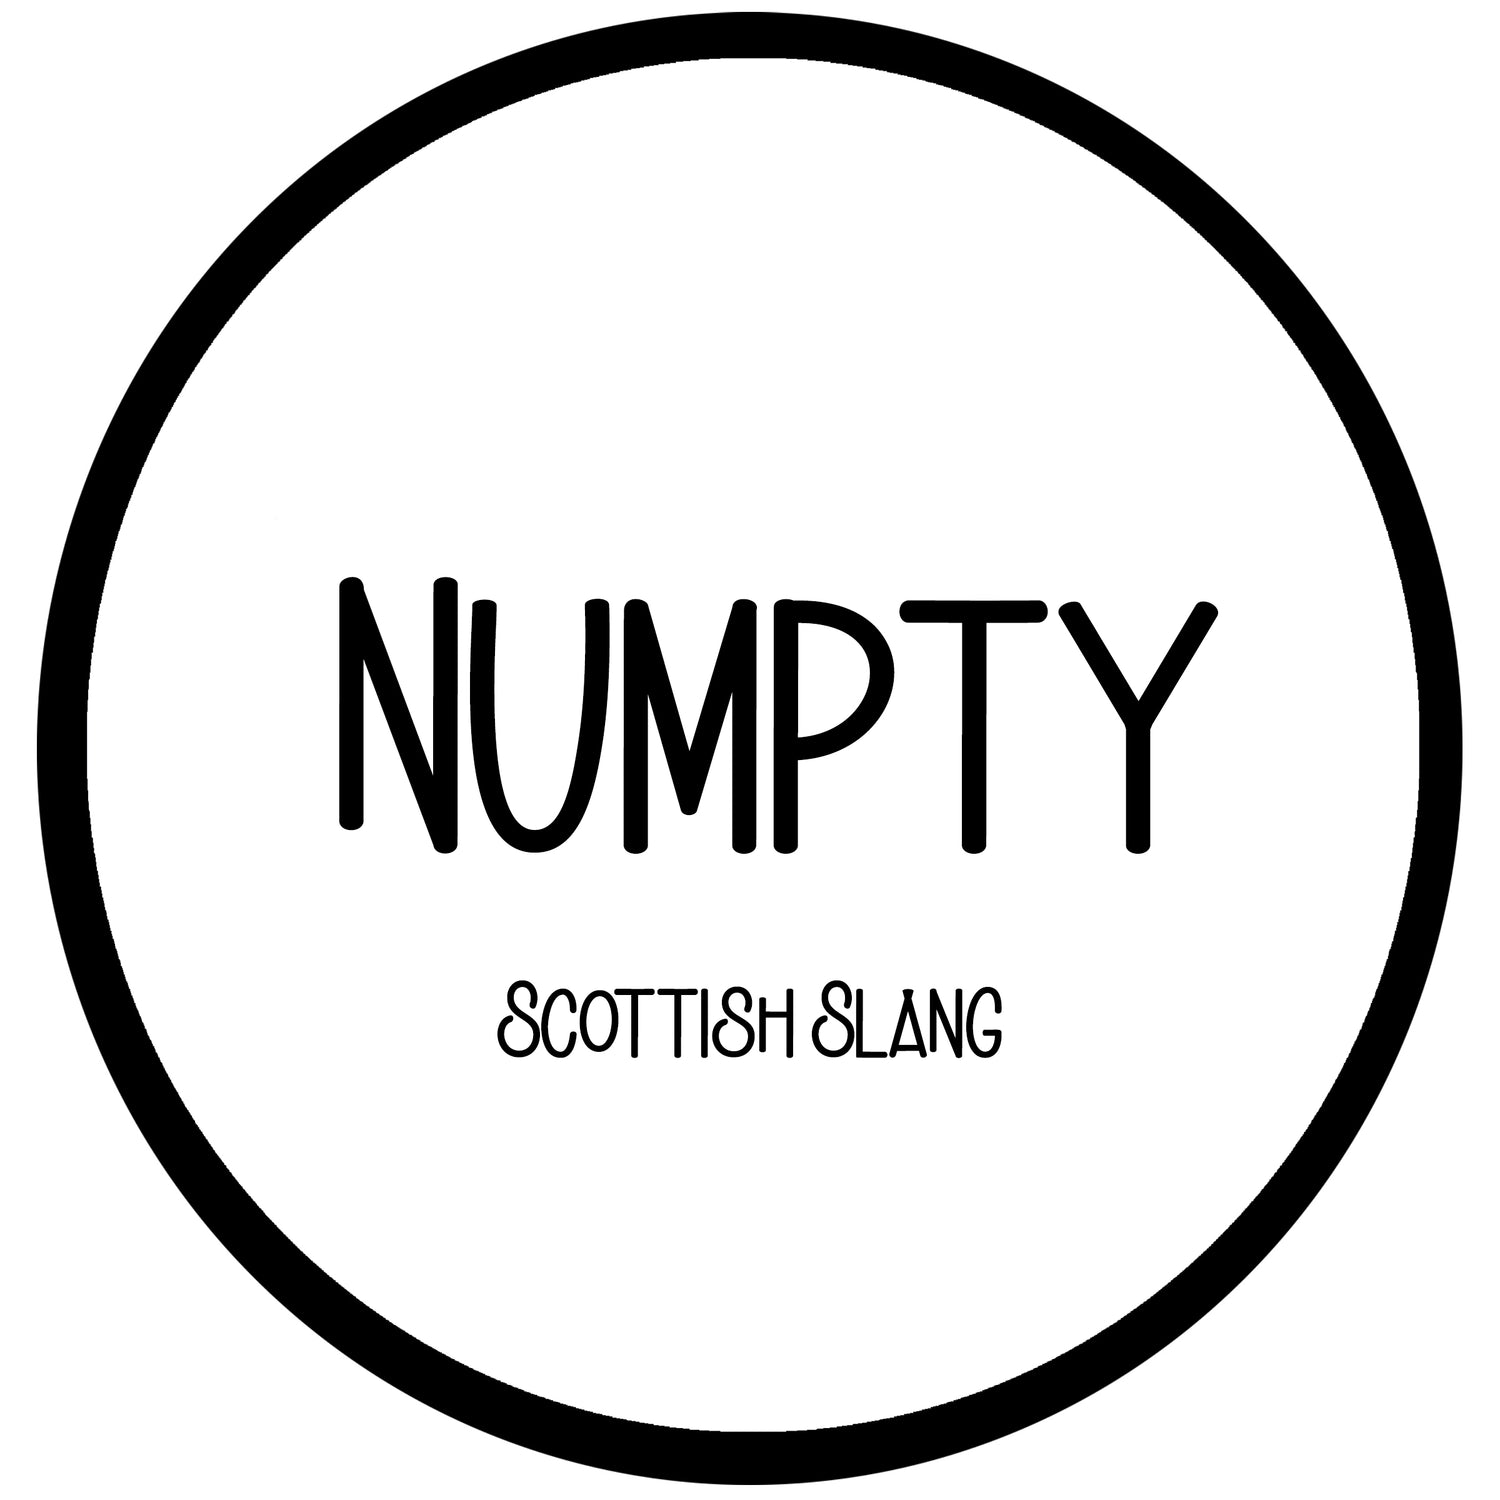 Numpty - Scots Slang